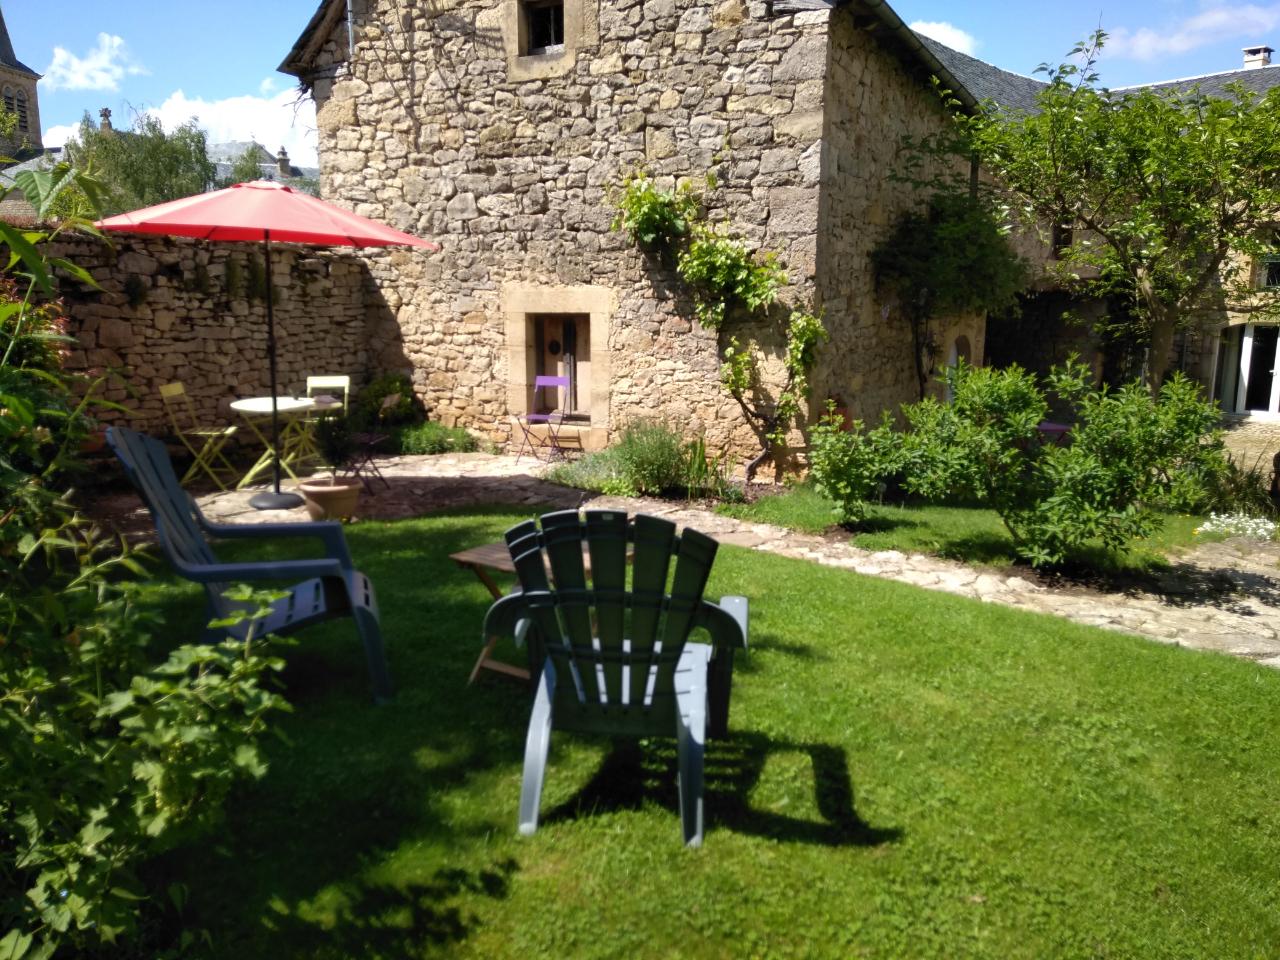 Hôte GreenGo: Le Clos du Barry  - chambres d'hôtes de charme en Aveyron - Image 3